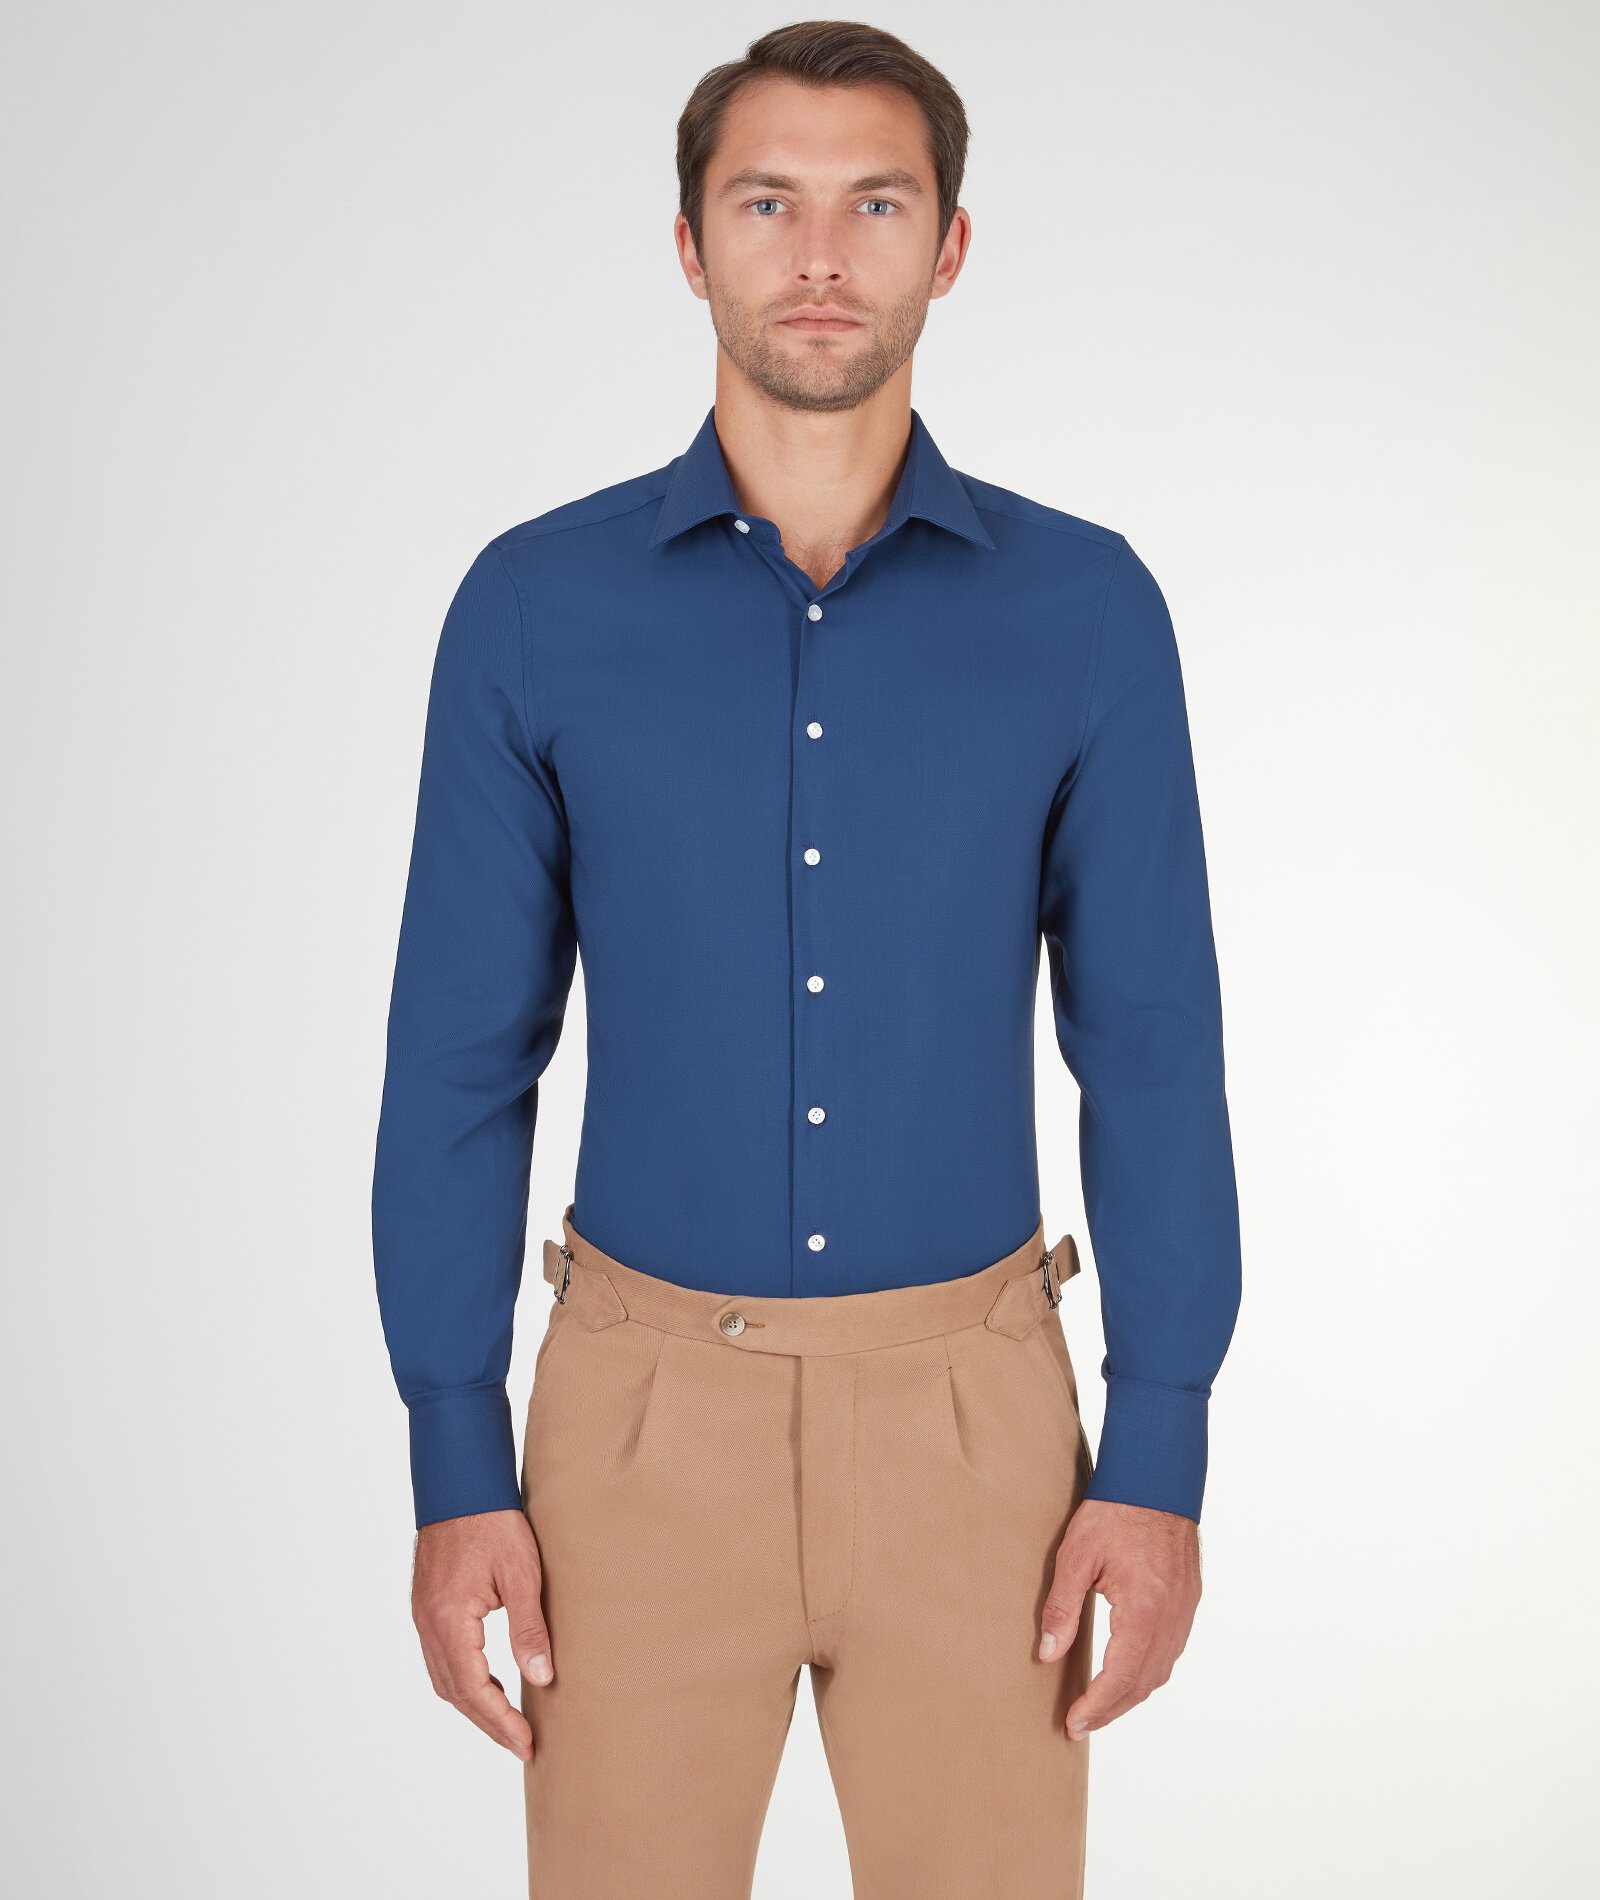 Image of Camicia da uomo su misura, Lanificio Zignone, Blu in Twill di Lana, Quattro Stagioni | Lanieri